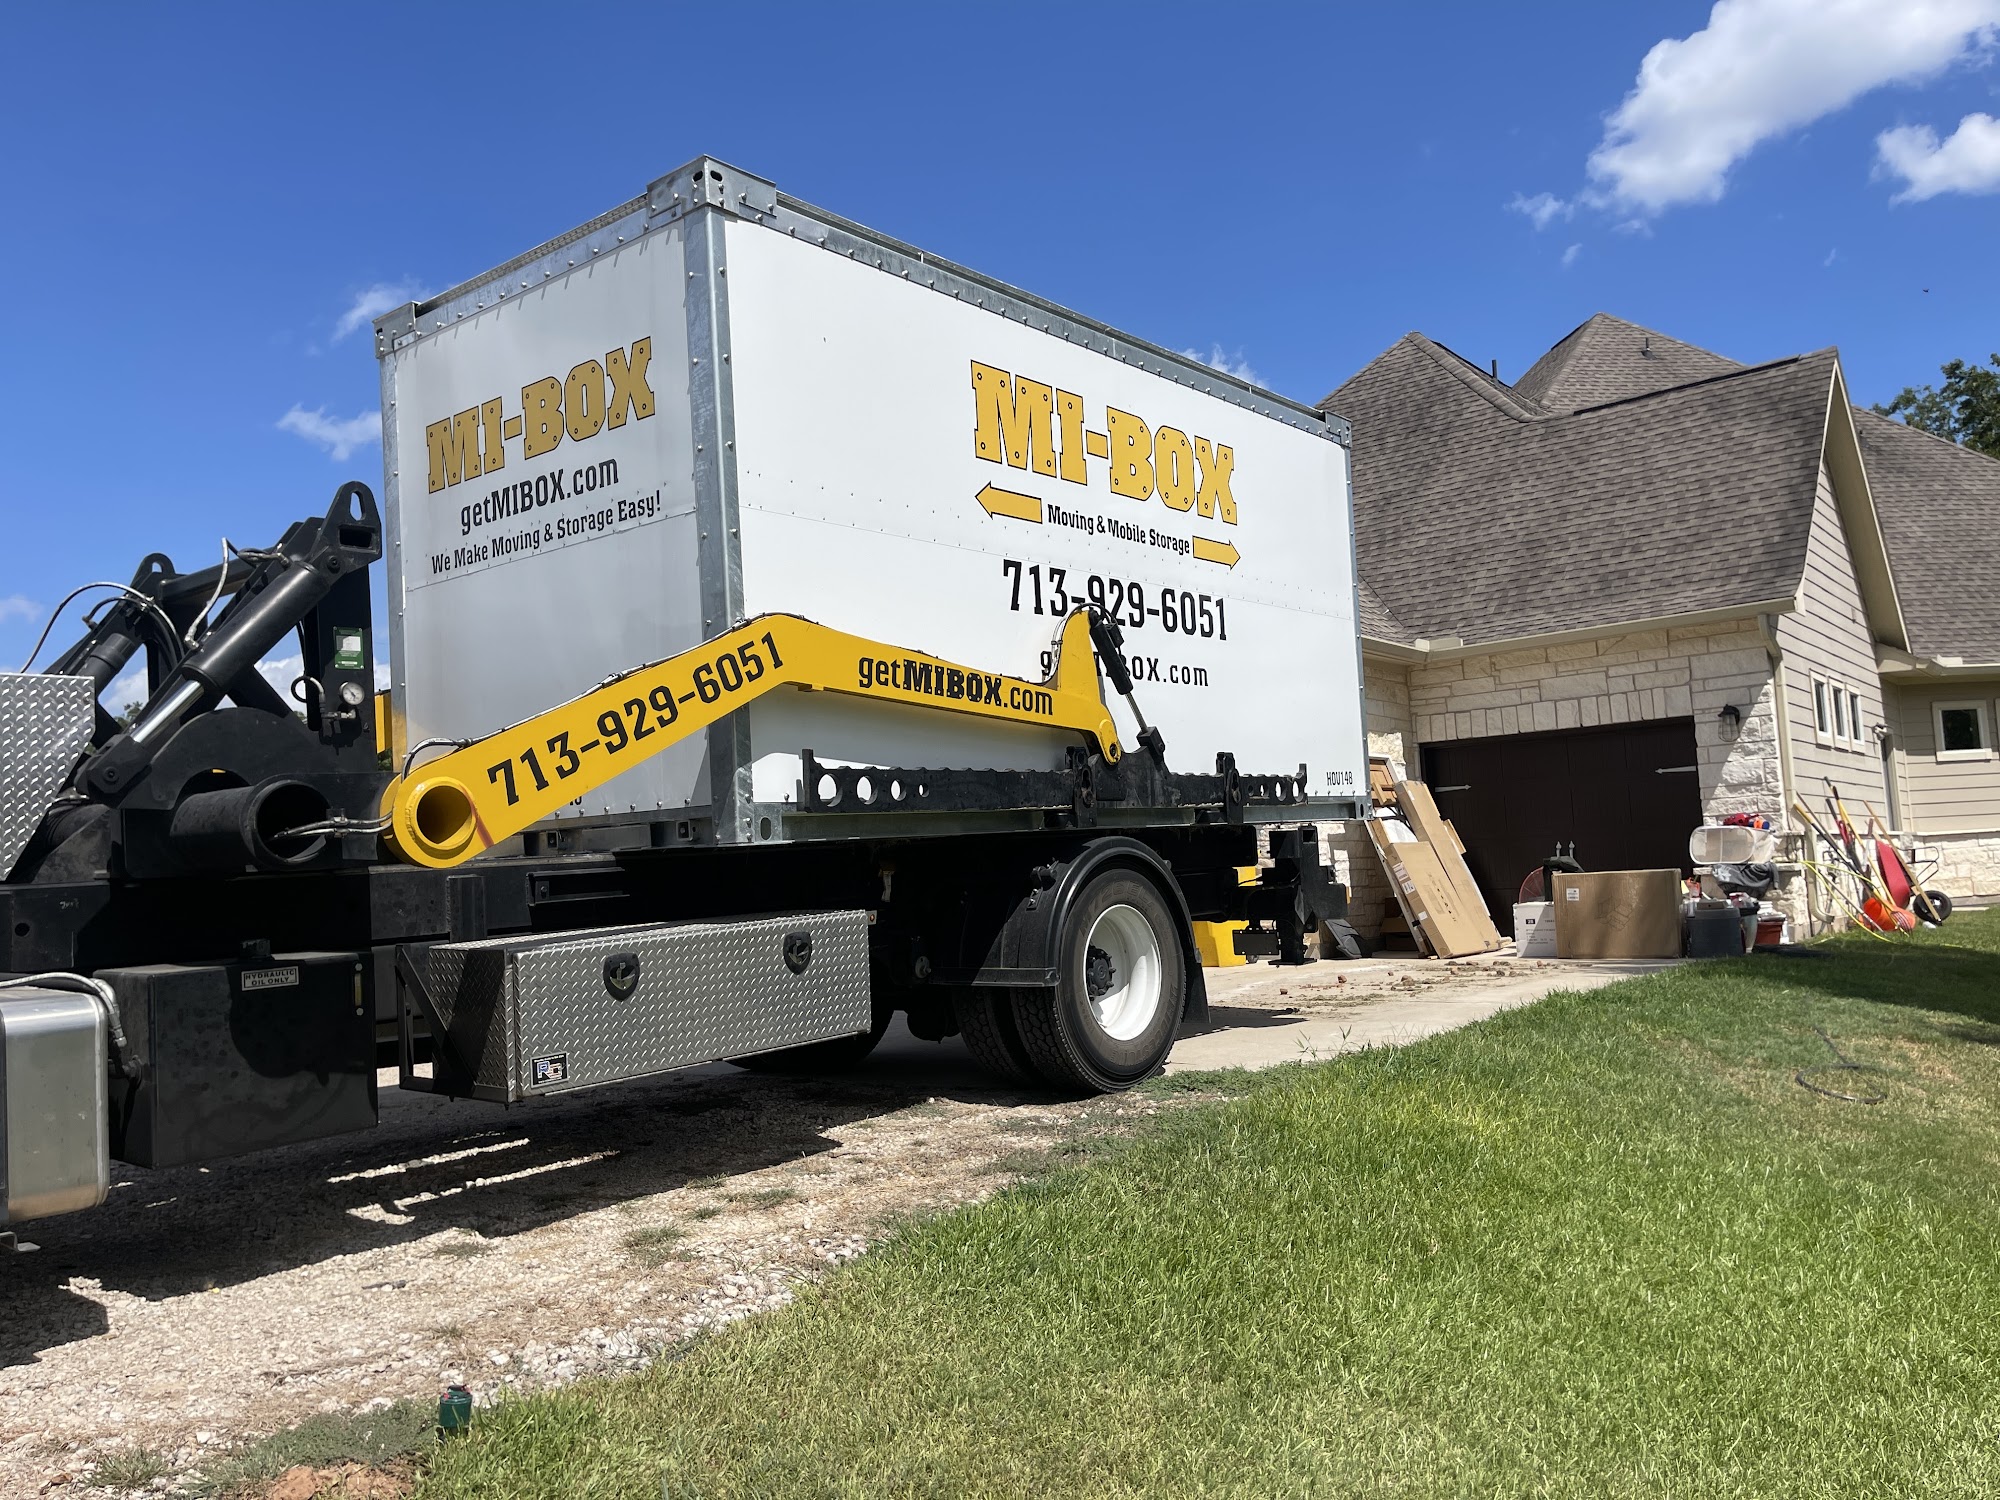 Mi-Box Moving & Mobile Storage of Houston